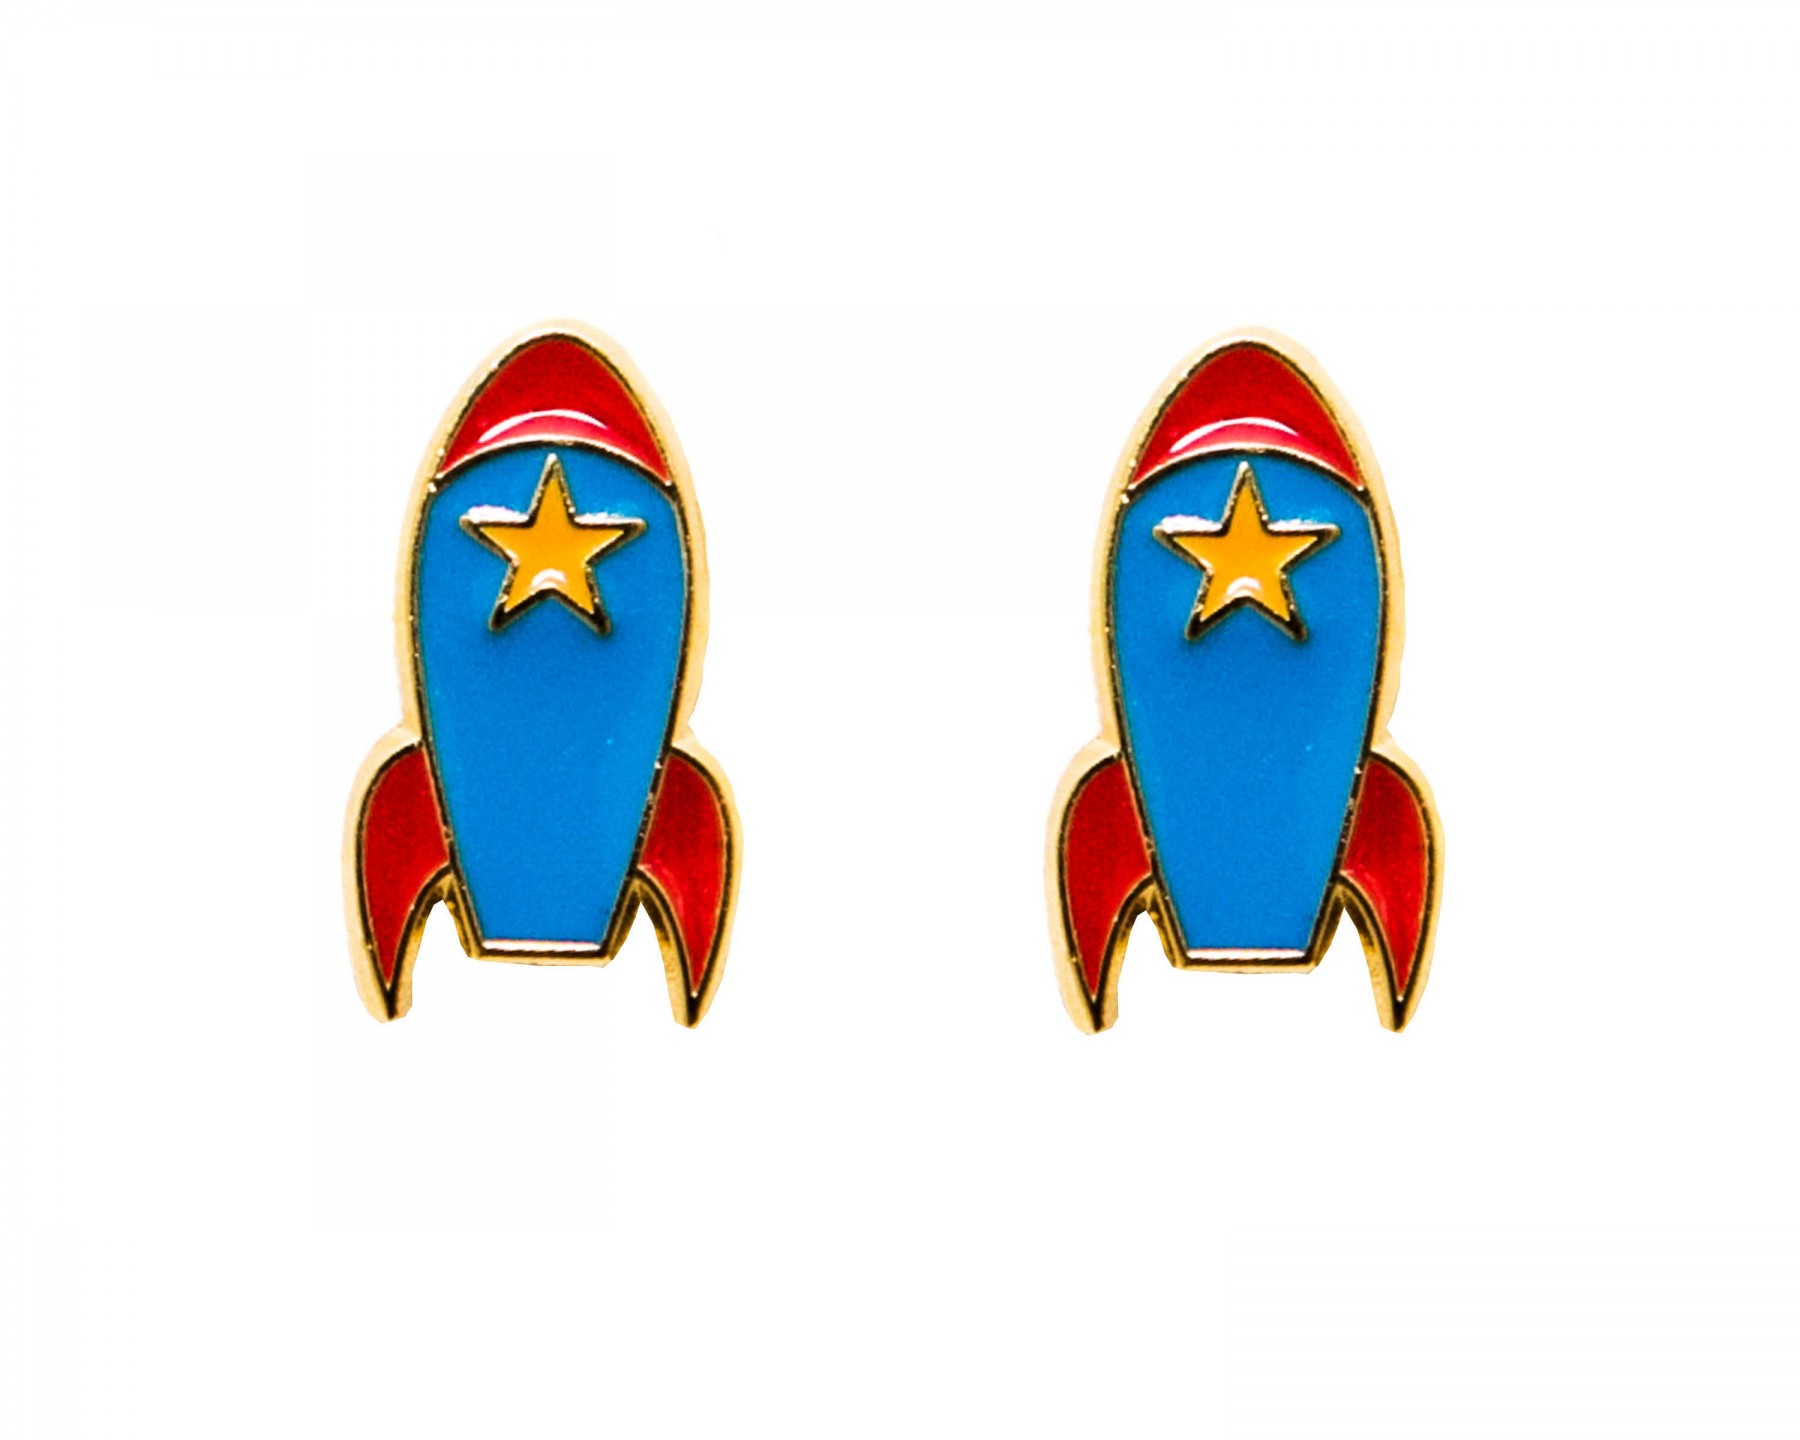 Rocket earrings